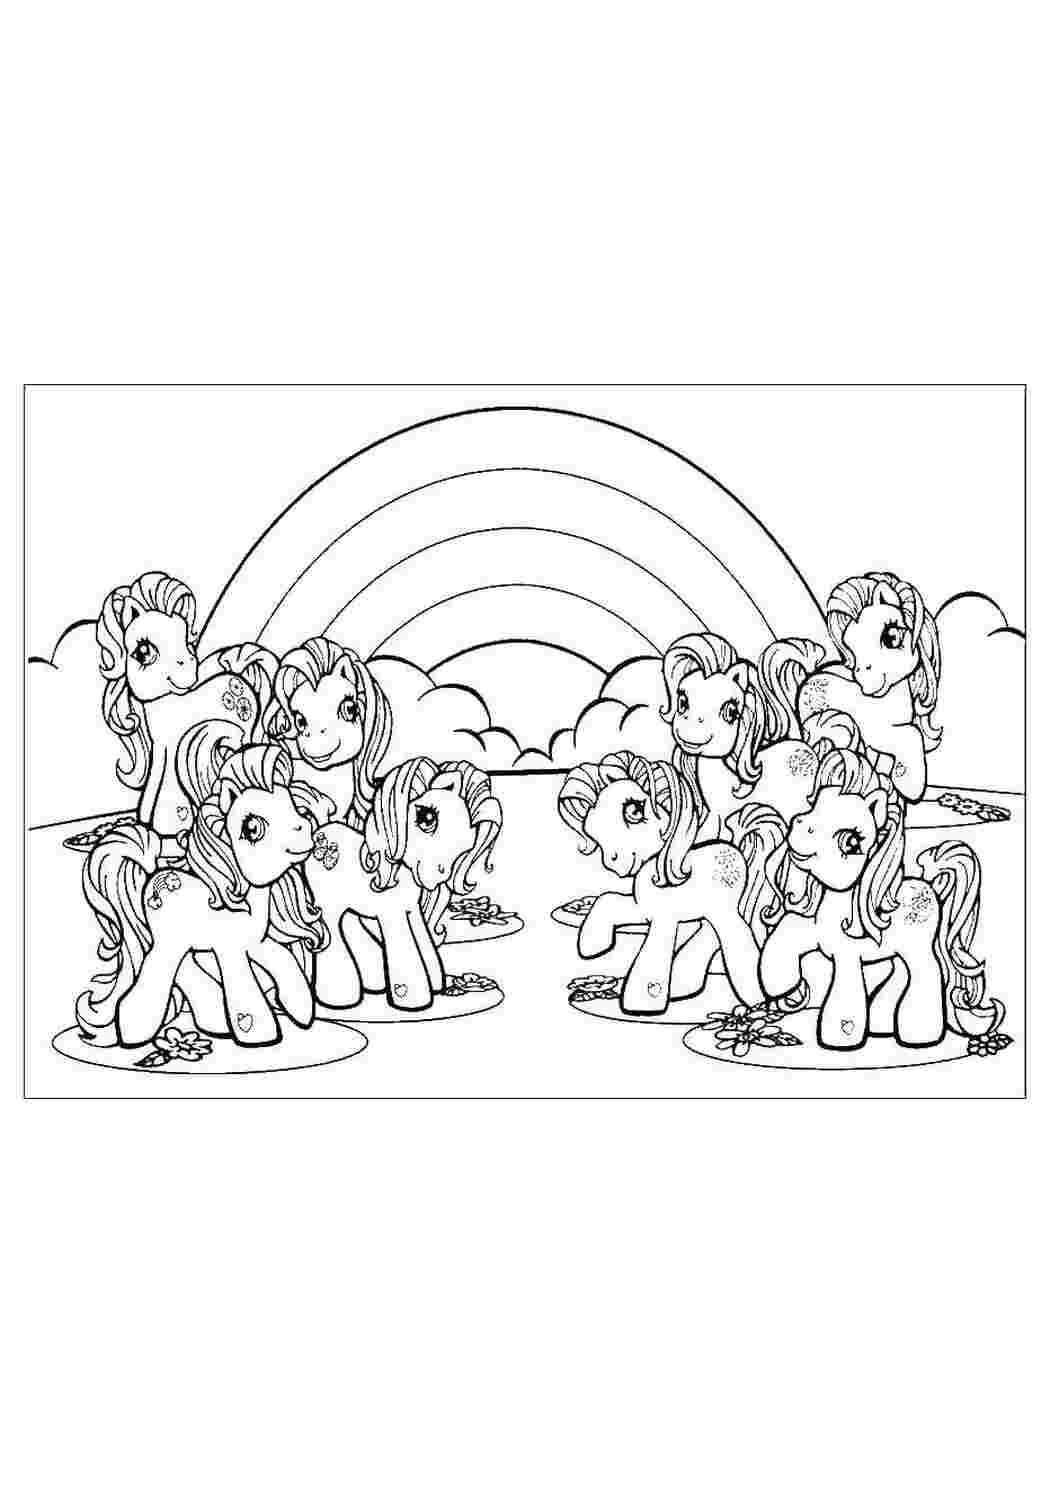 Раскраски Восемь милых пони на фонерадуги Пони Пони, радуга, my little ponny